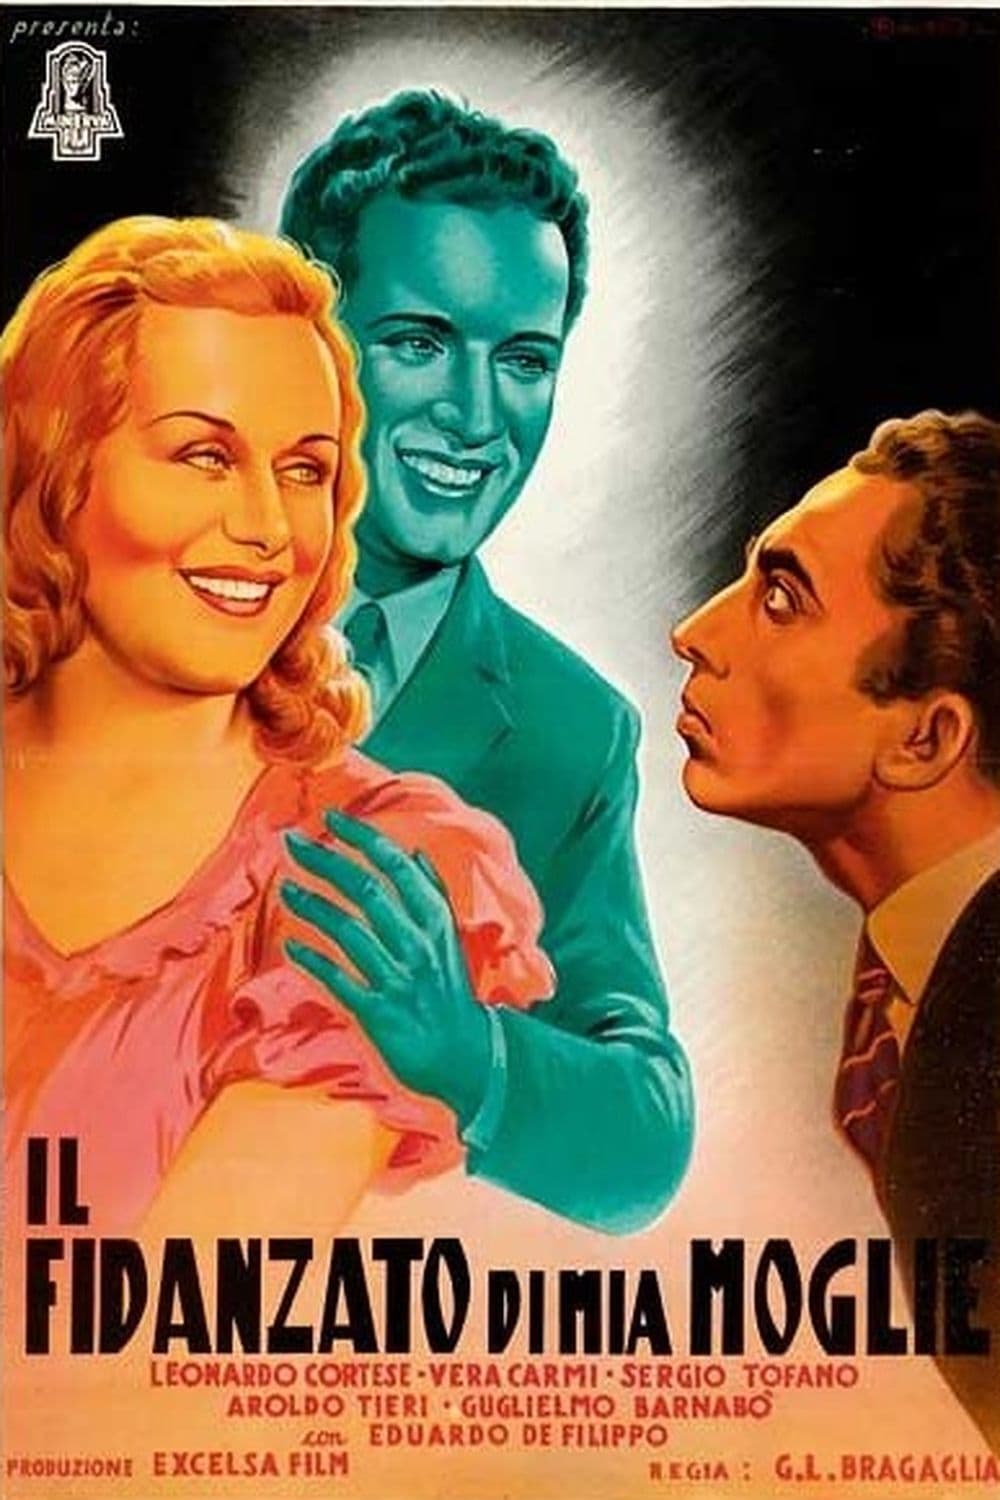 Il fidanzato di mia moglie (1943)